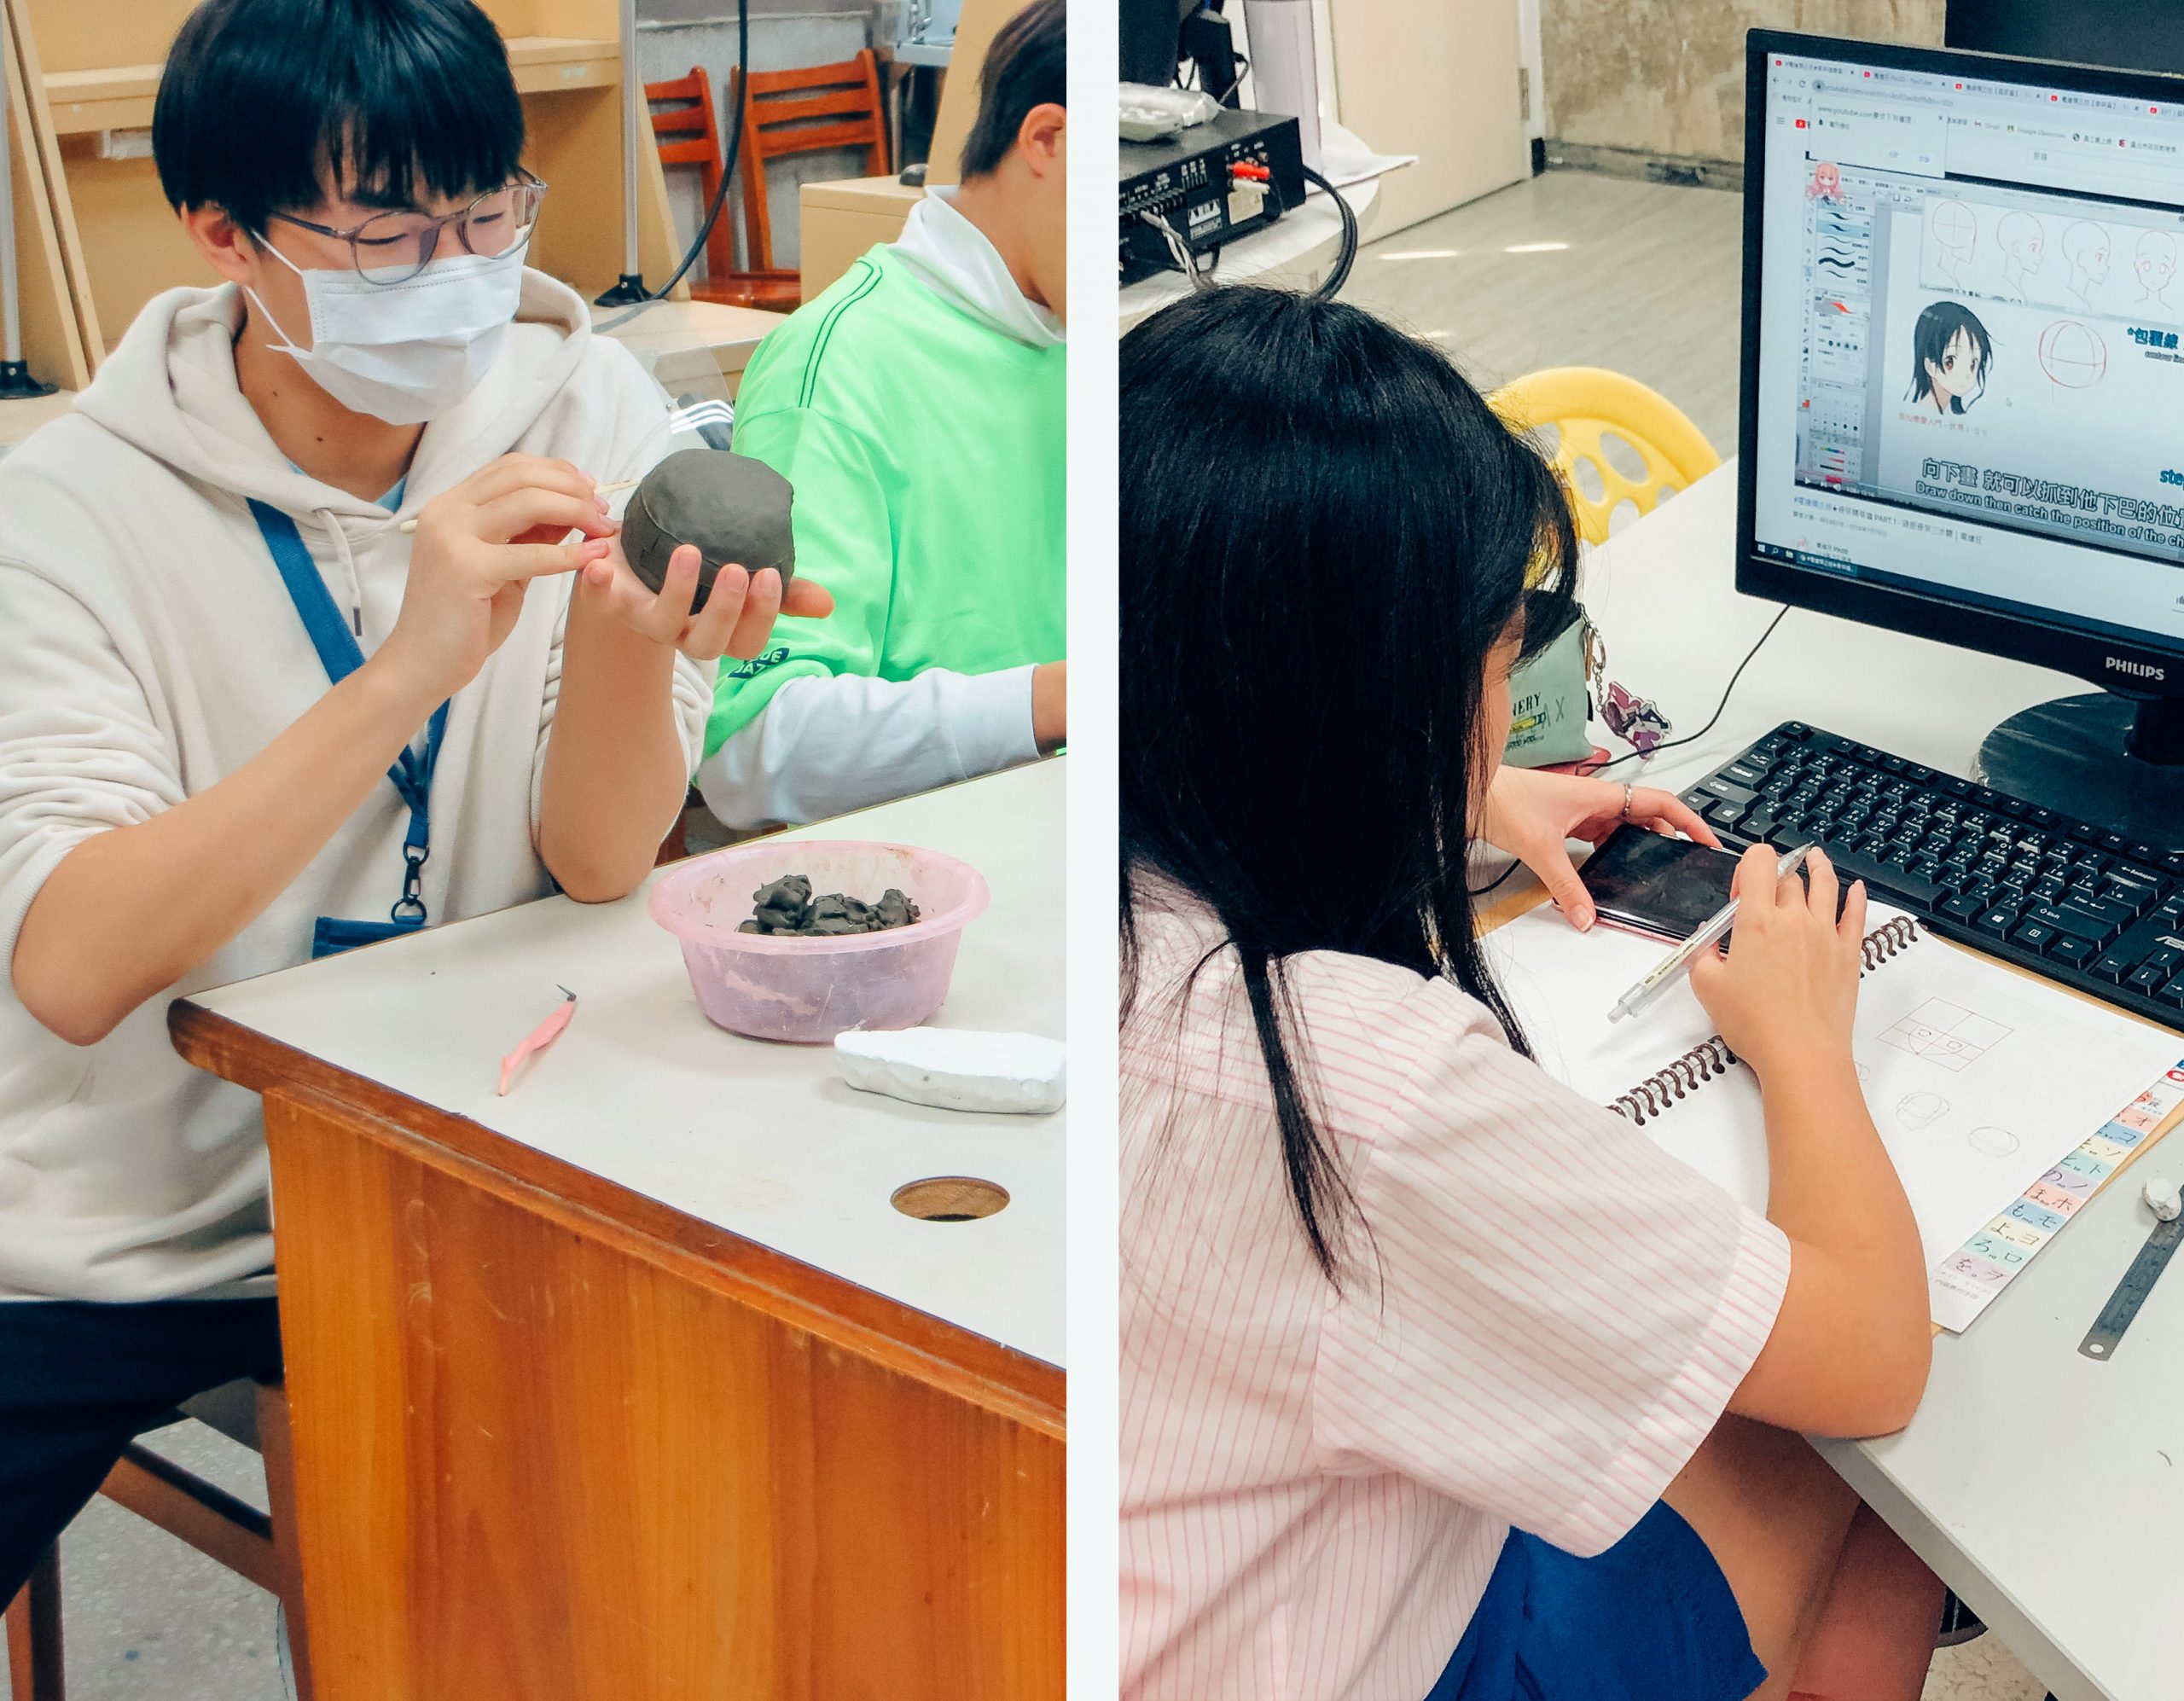 一男學生在實作黏土模型，另一女學生在電腦上繪圖個人創作角色